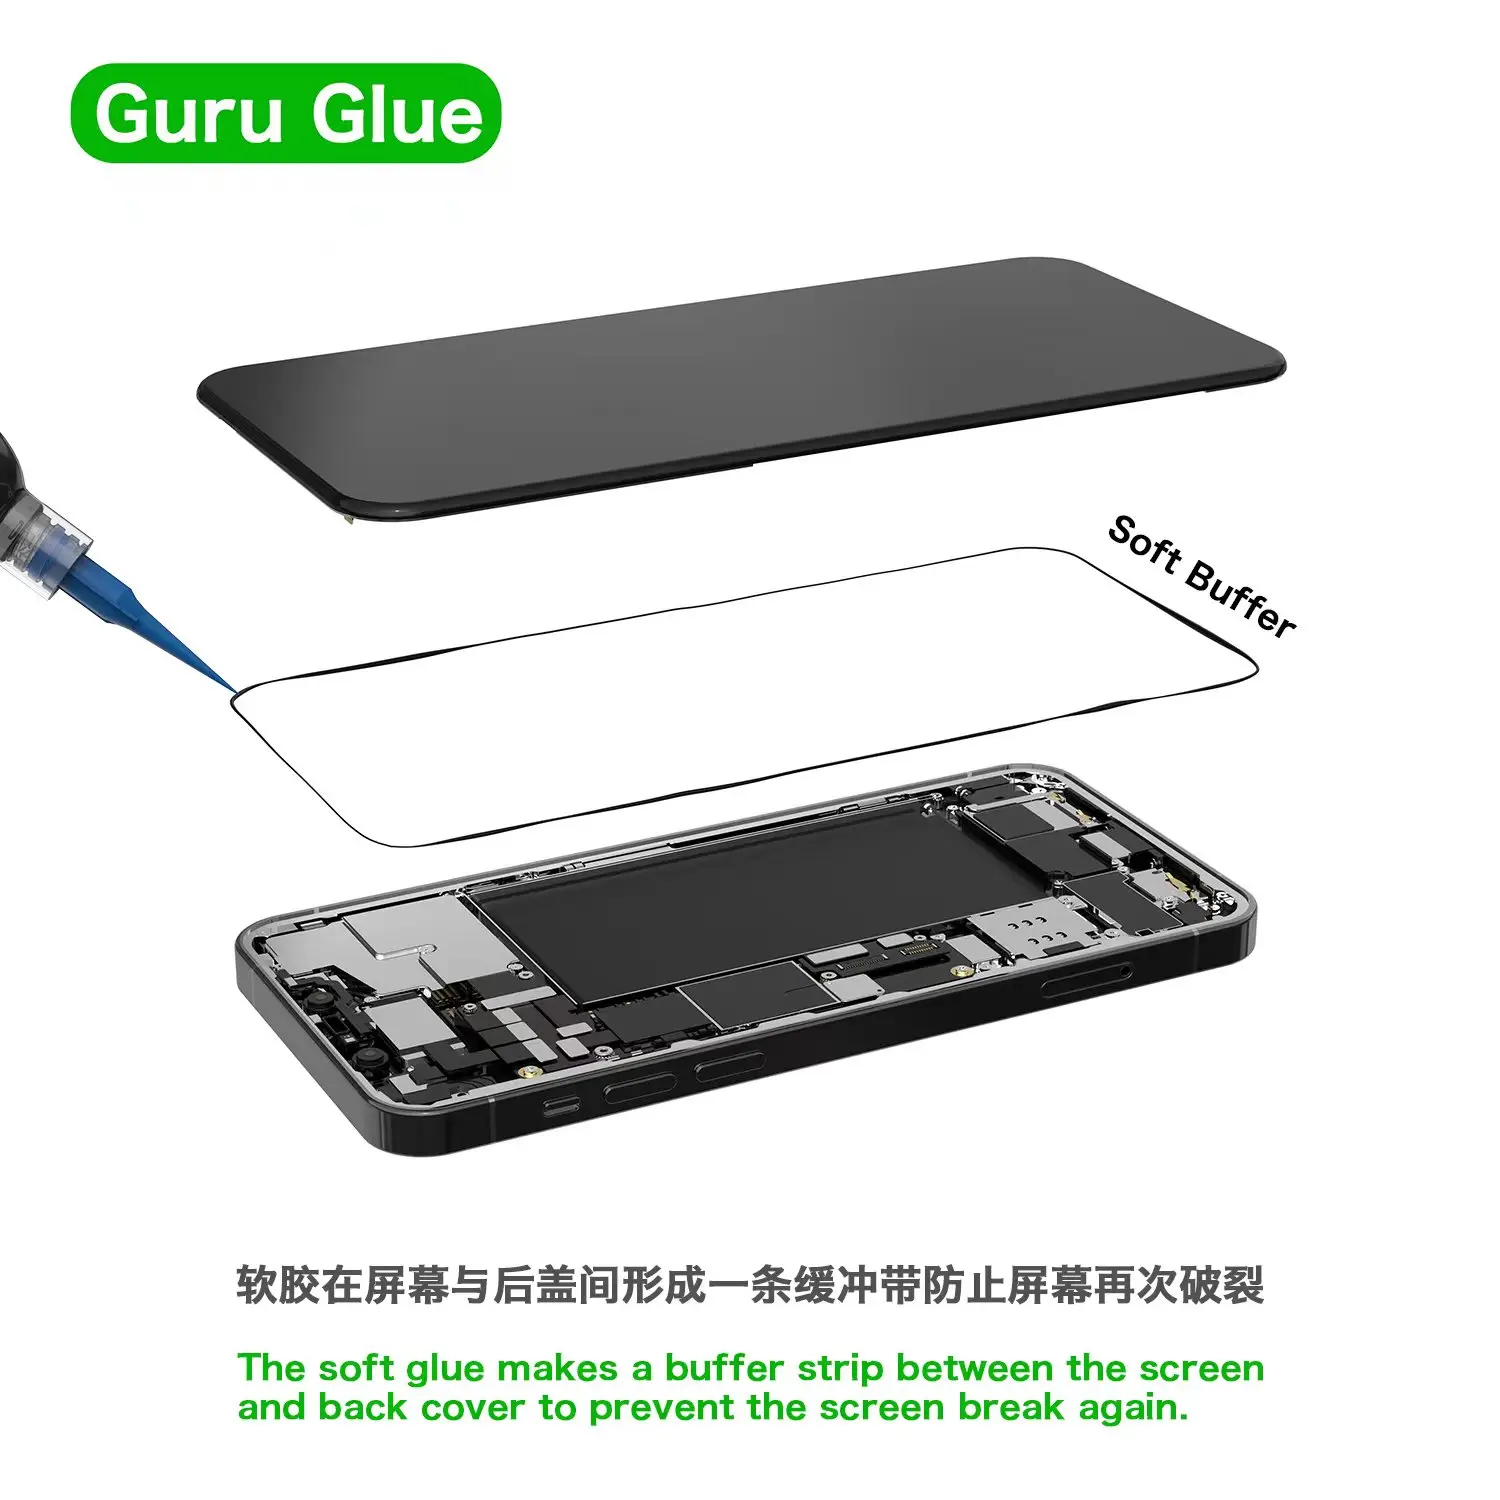 Ljepilo 2UUL Guru / Soft tampon ljepilo za popravke telefona 30 ml (crno-bijelo) / Ljepilo za mobilne uređaje / Ljepilo za popravke mobilnih LCD zaslona Slika 1